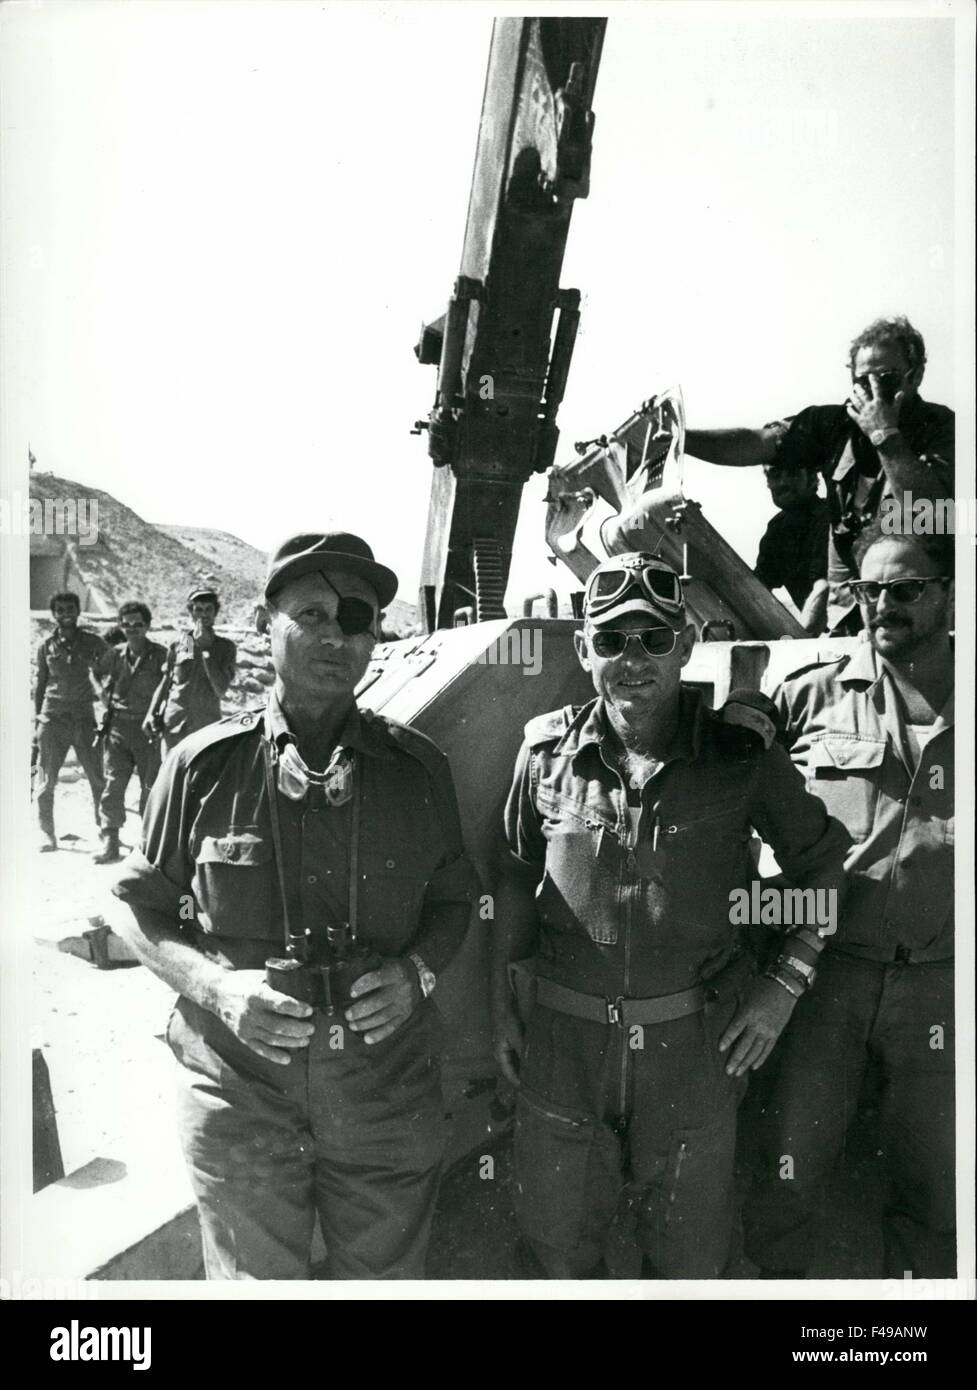 Yom Kippur guerra 1973: Moshe Dayan al Sioi davanti con il gen. Adnan al catturato SA-2 missile sito ad ovest del canale di Suez. © Keystone Pictures USA/ZUMAPRESS.com/Alamy Live News Foto Stock